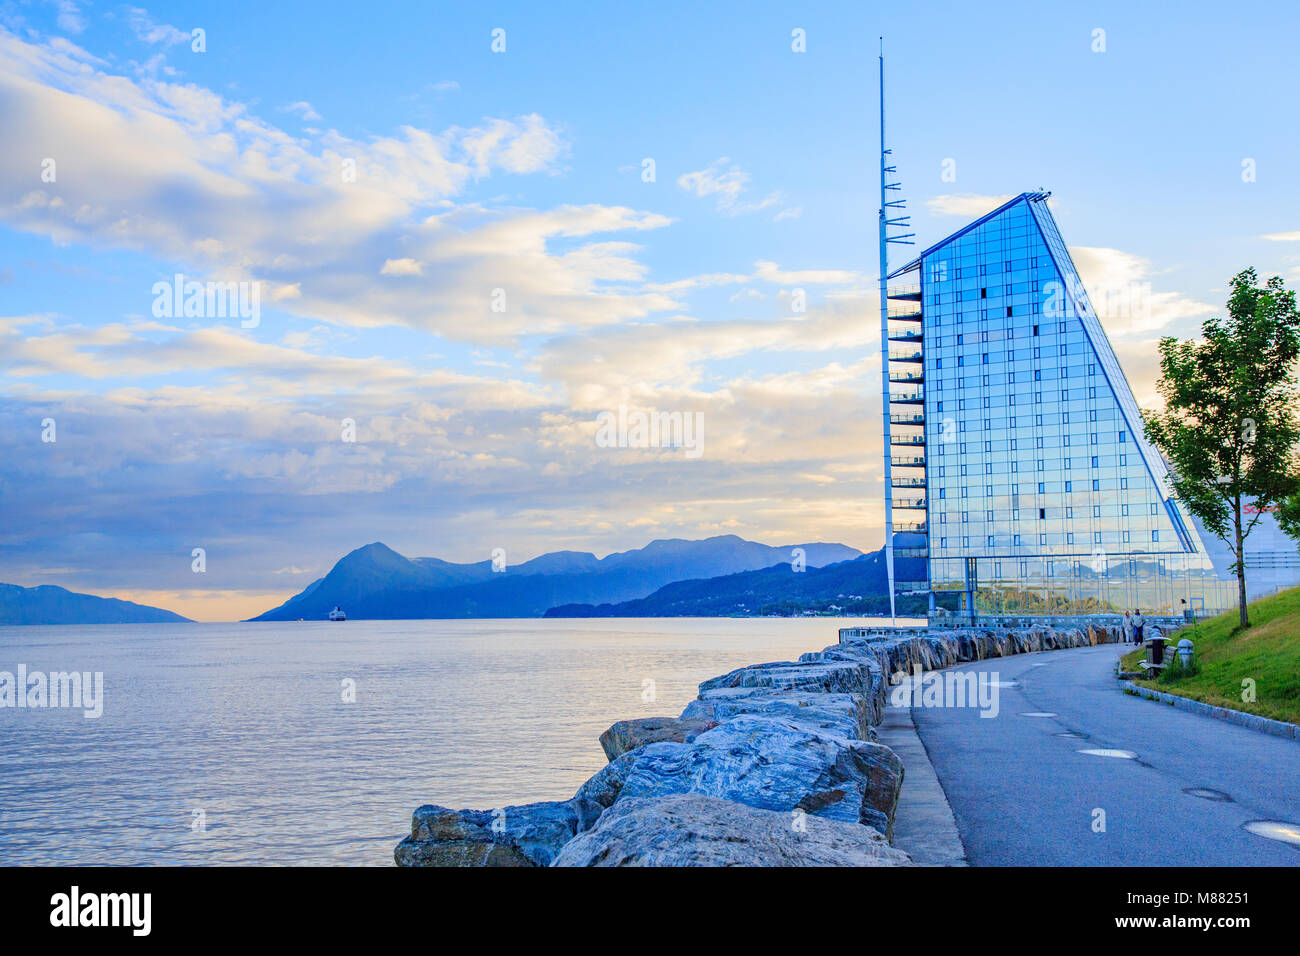 Scandic Hotel Seilet - ein hoch aufragendes Hotel wie ein Schiff Segel geformt, an der Kante der Fjord und mit Blick auf das Panorama von Molde in Norwegen Stockfoto